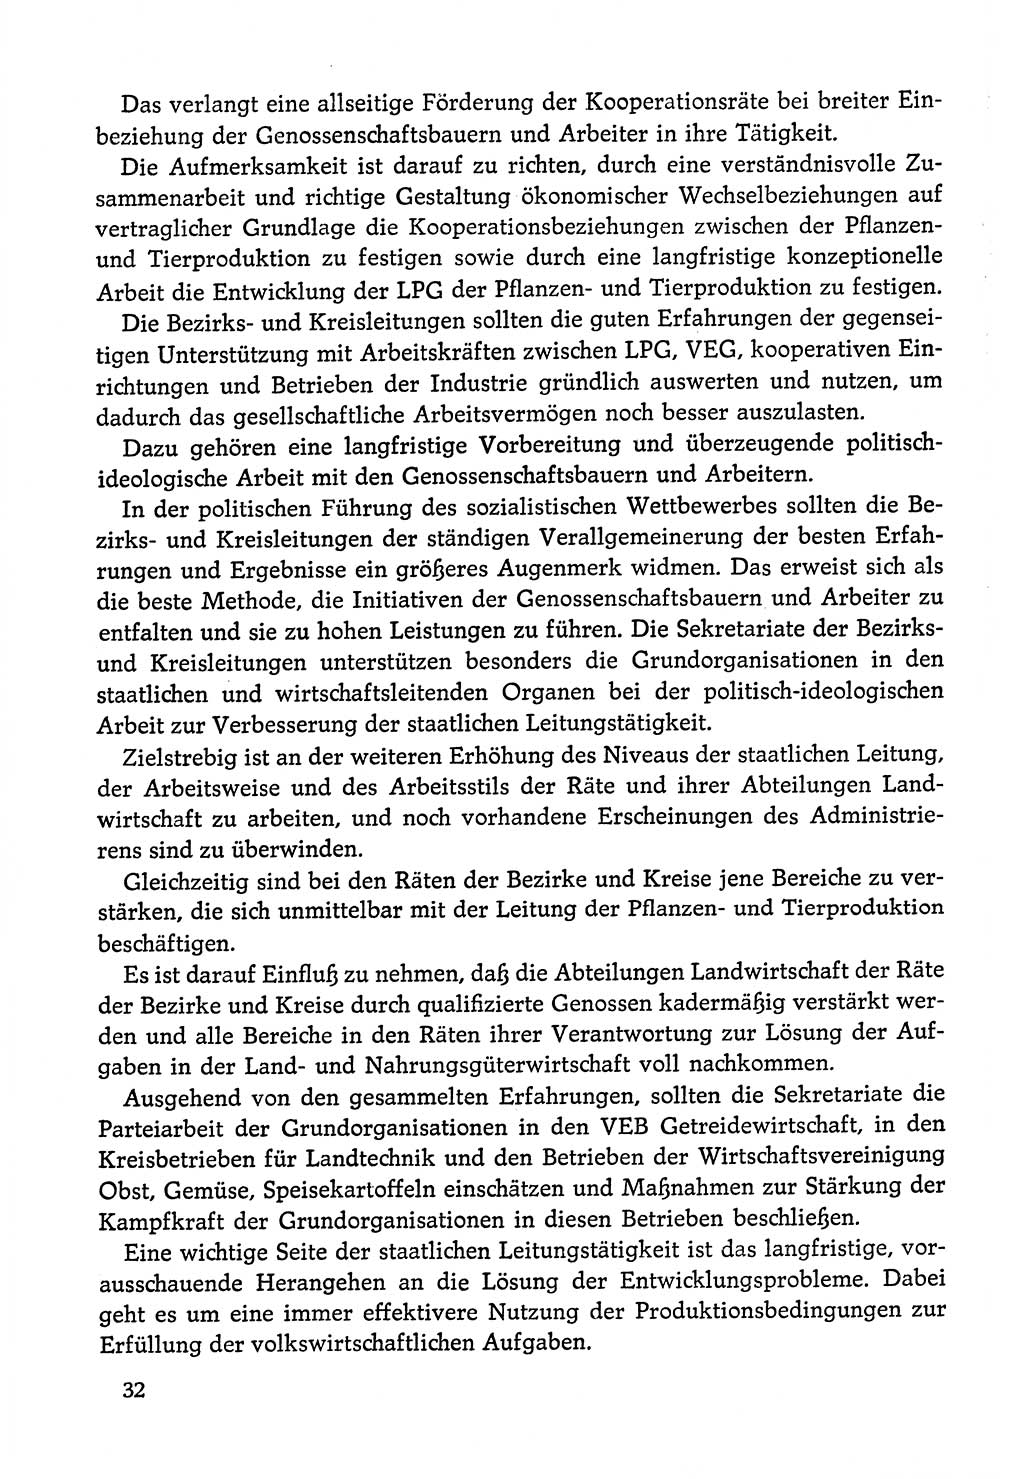 Dokumente der Sozialistischen Einheitspartei Deutschlands (SED) [Deutsche Demokratische Republik (DDR)] 1978-1979, Seite 32 (Dok. SED DDR 1978-1979, S. 32)